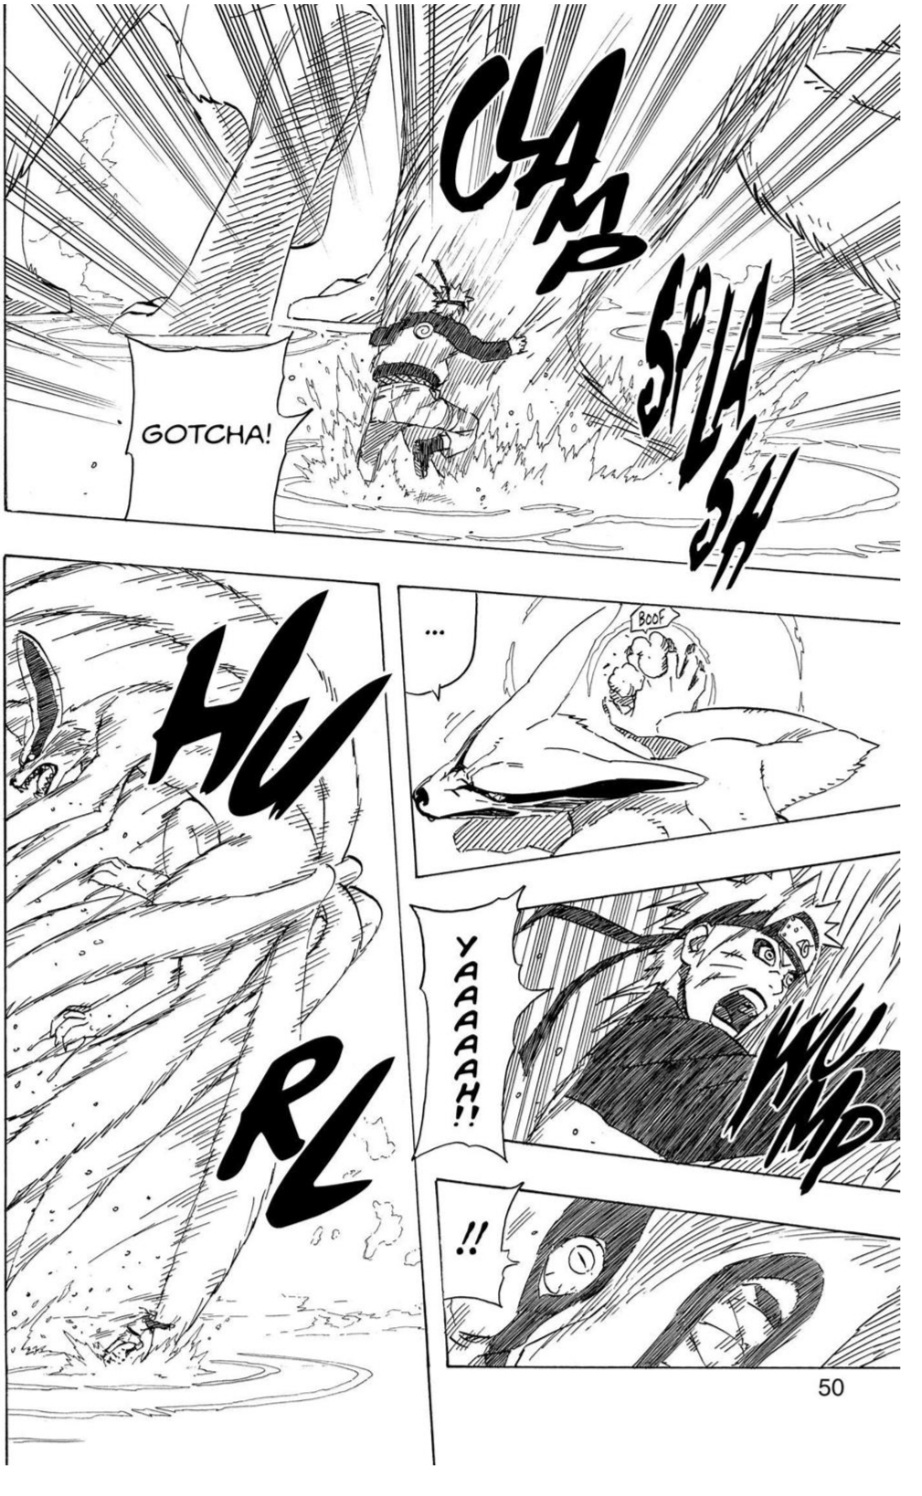 Itachi vs esquadrão kinkaku e ginkaku - Página 3 Screen69